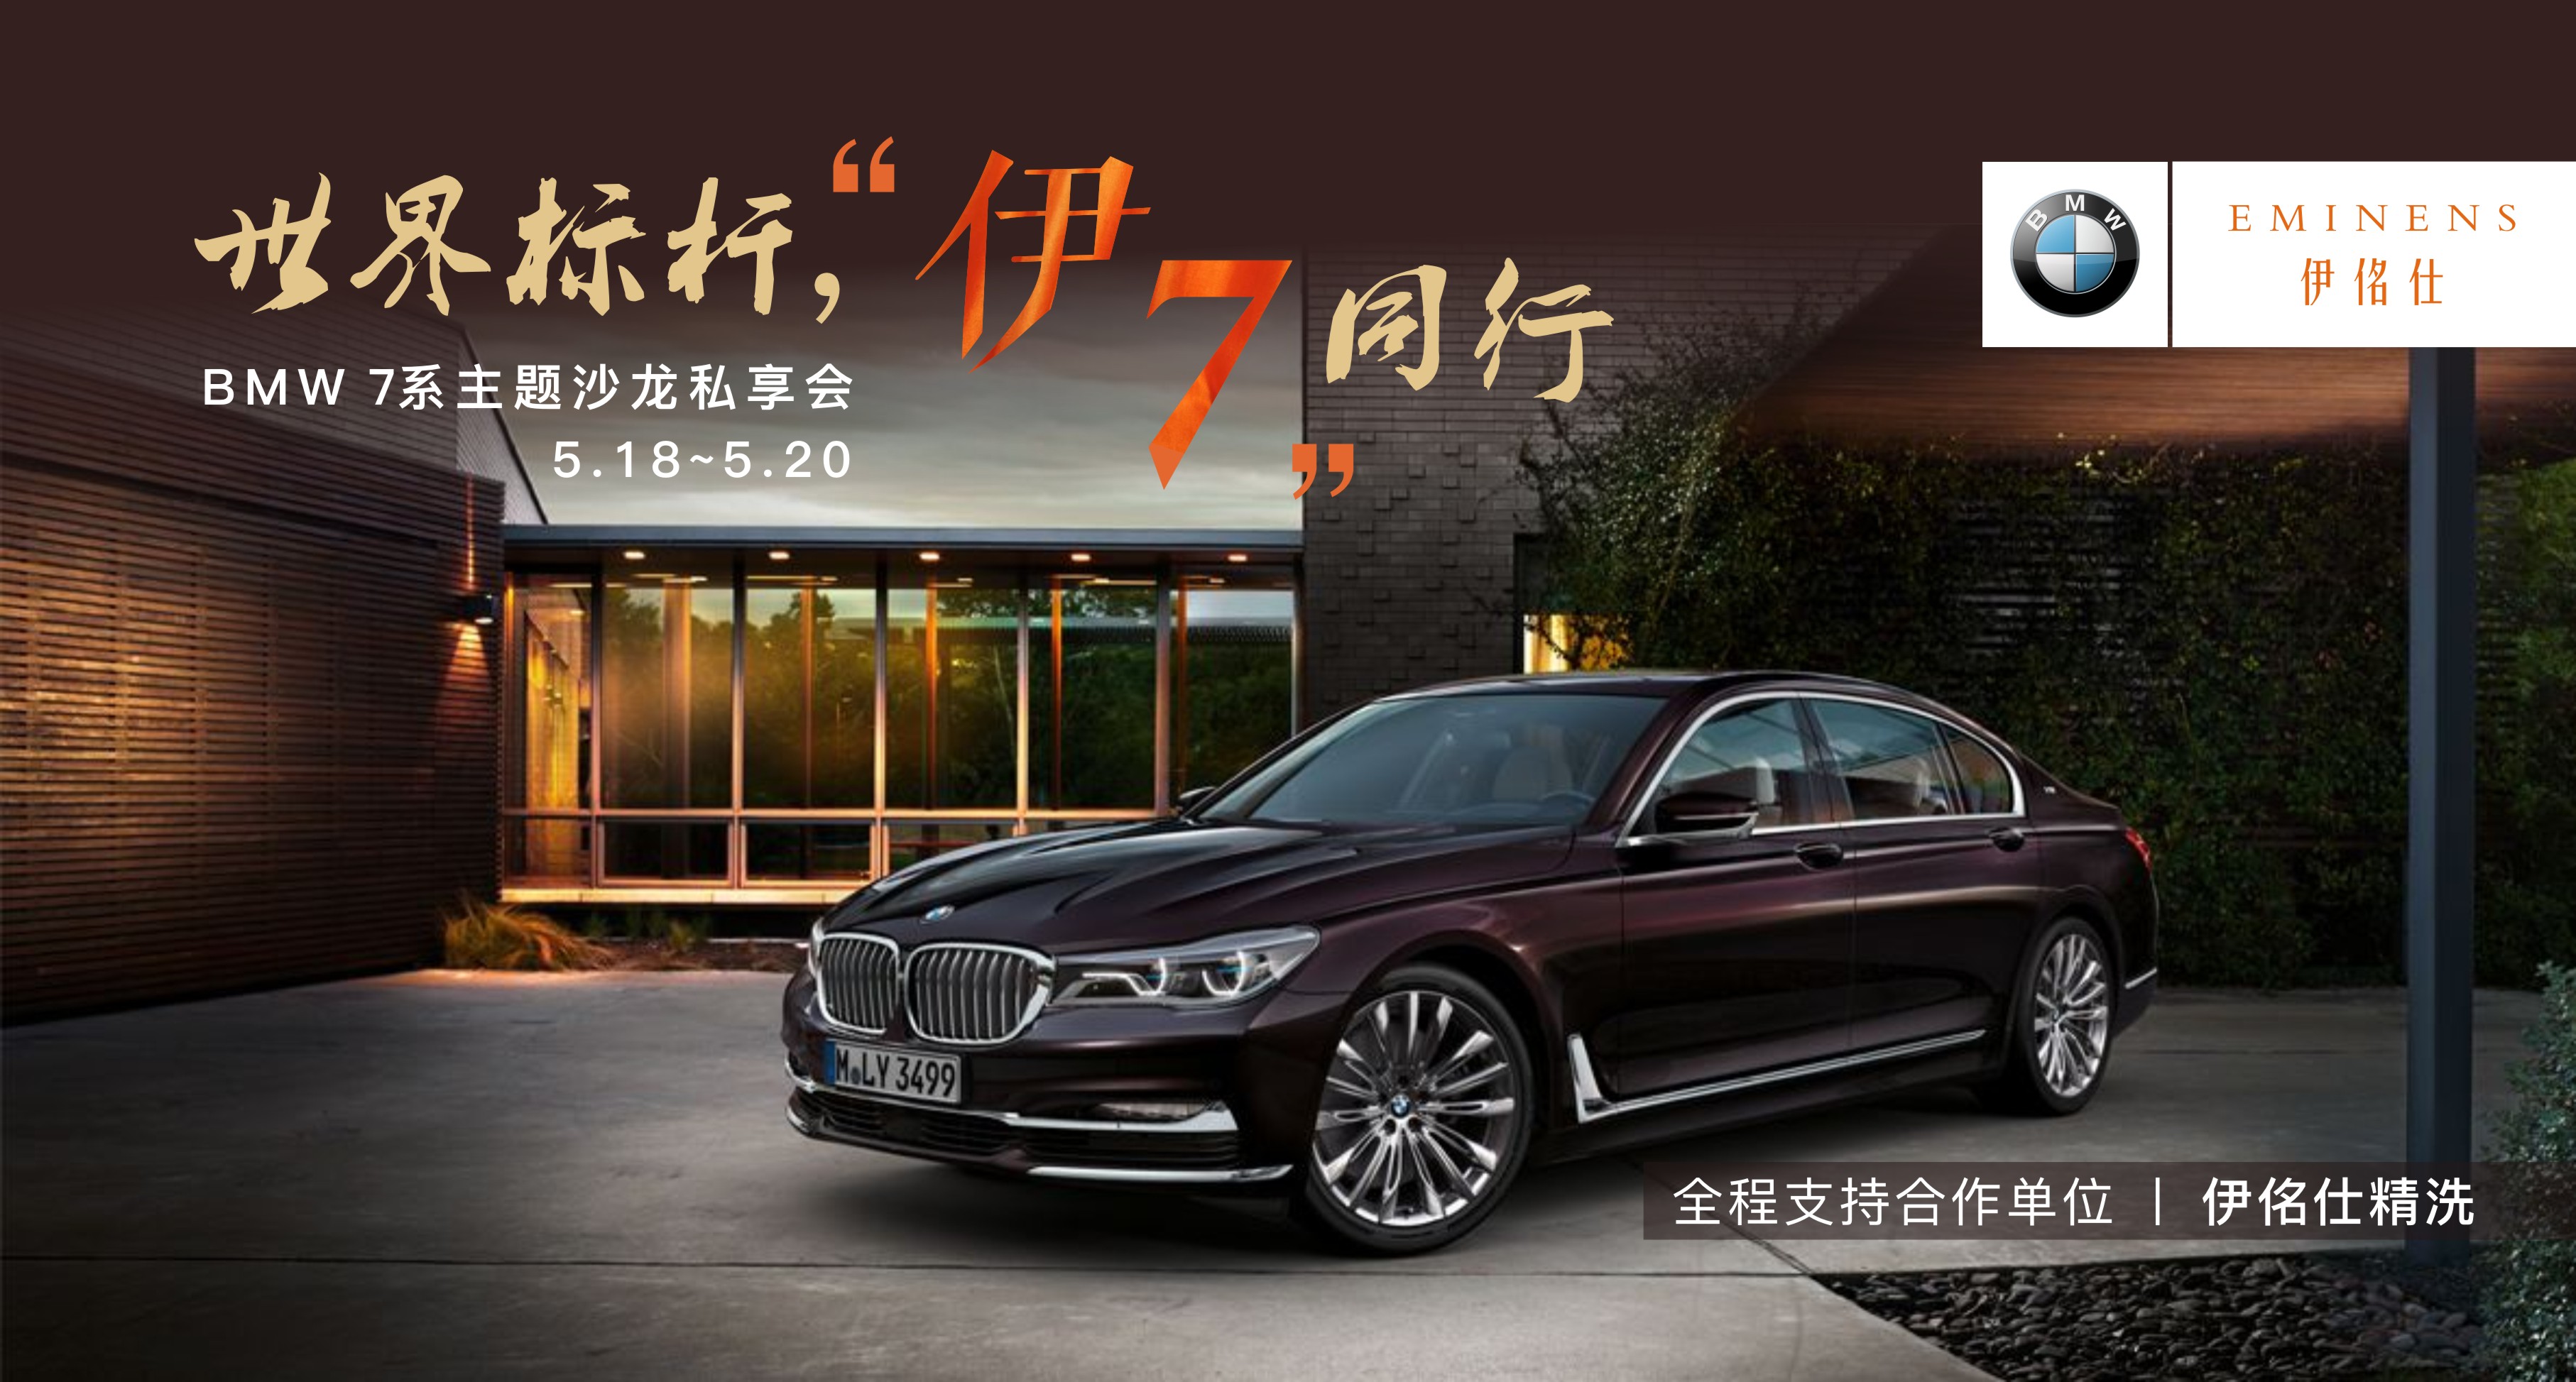 伊佲仕&BMW联合打造宁波小区BMW 7系主题沙龙私享会圆满结束